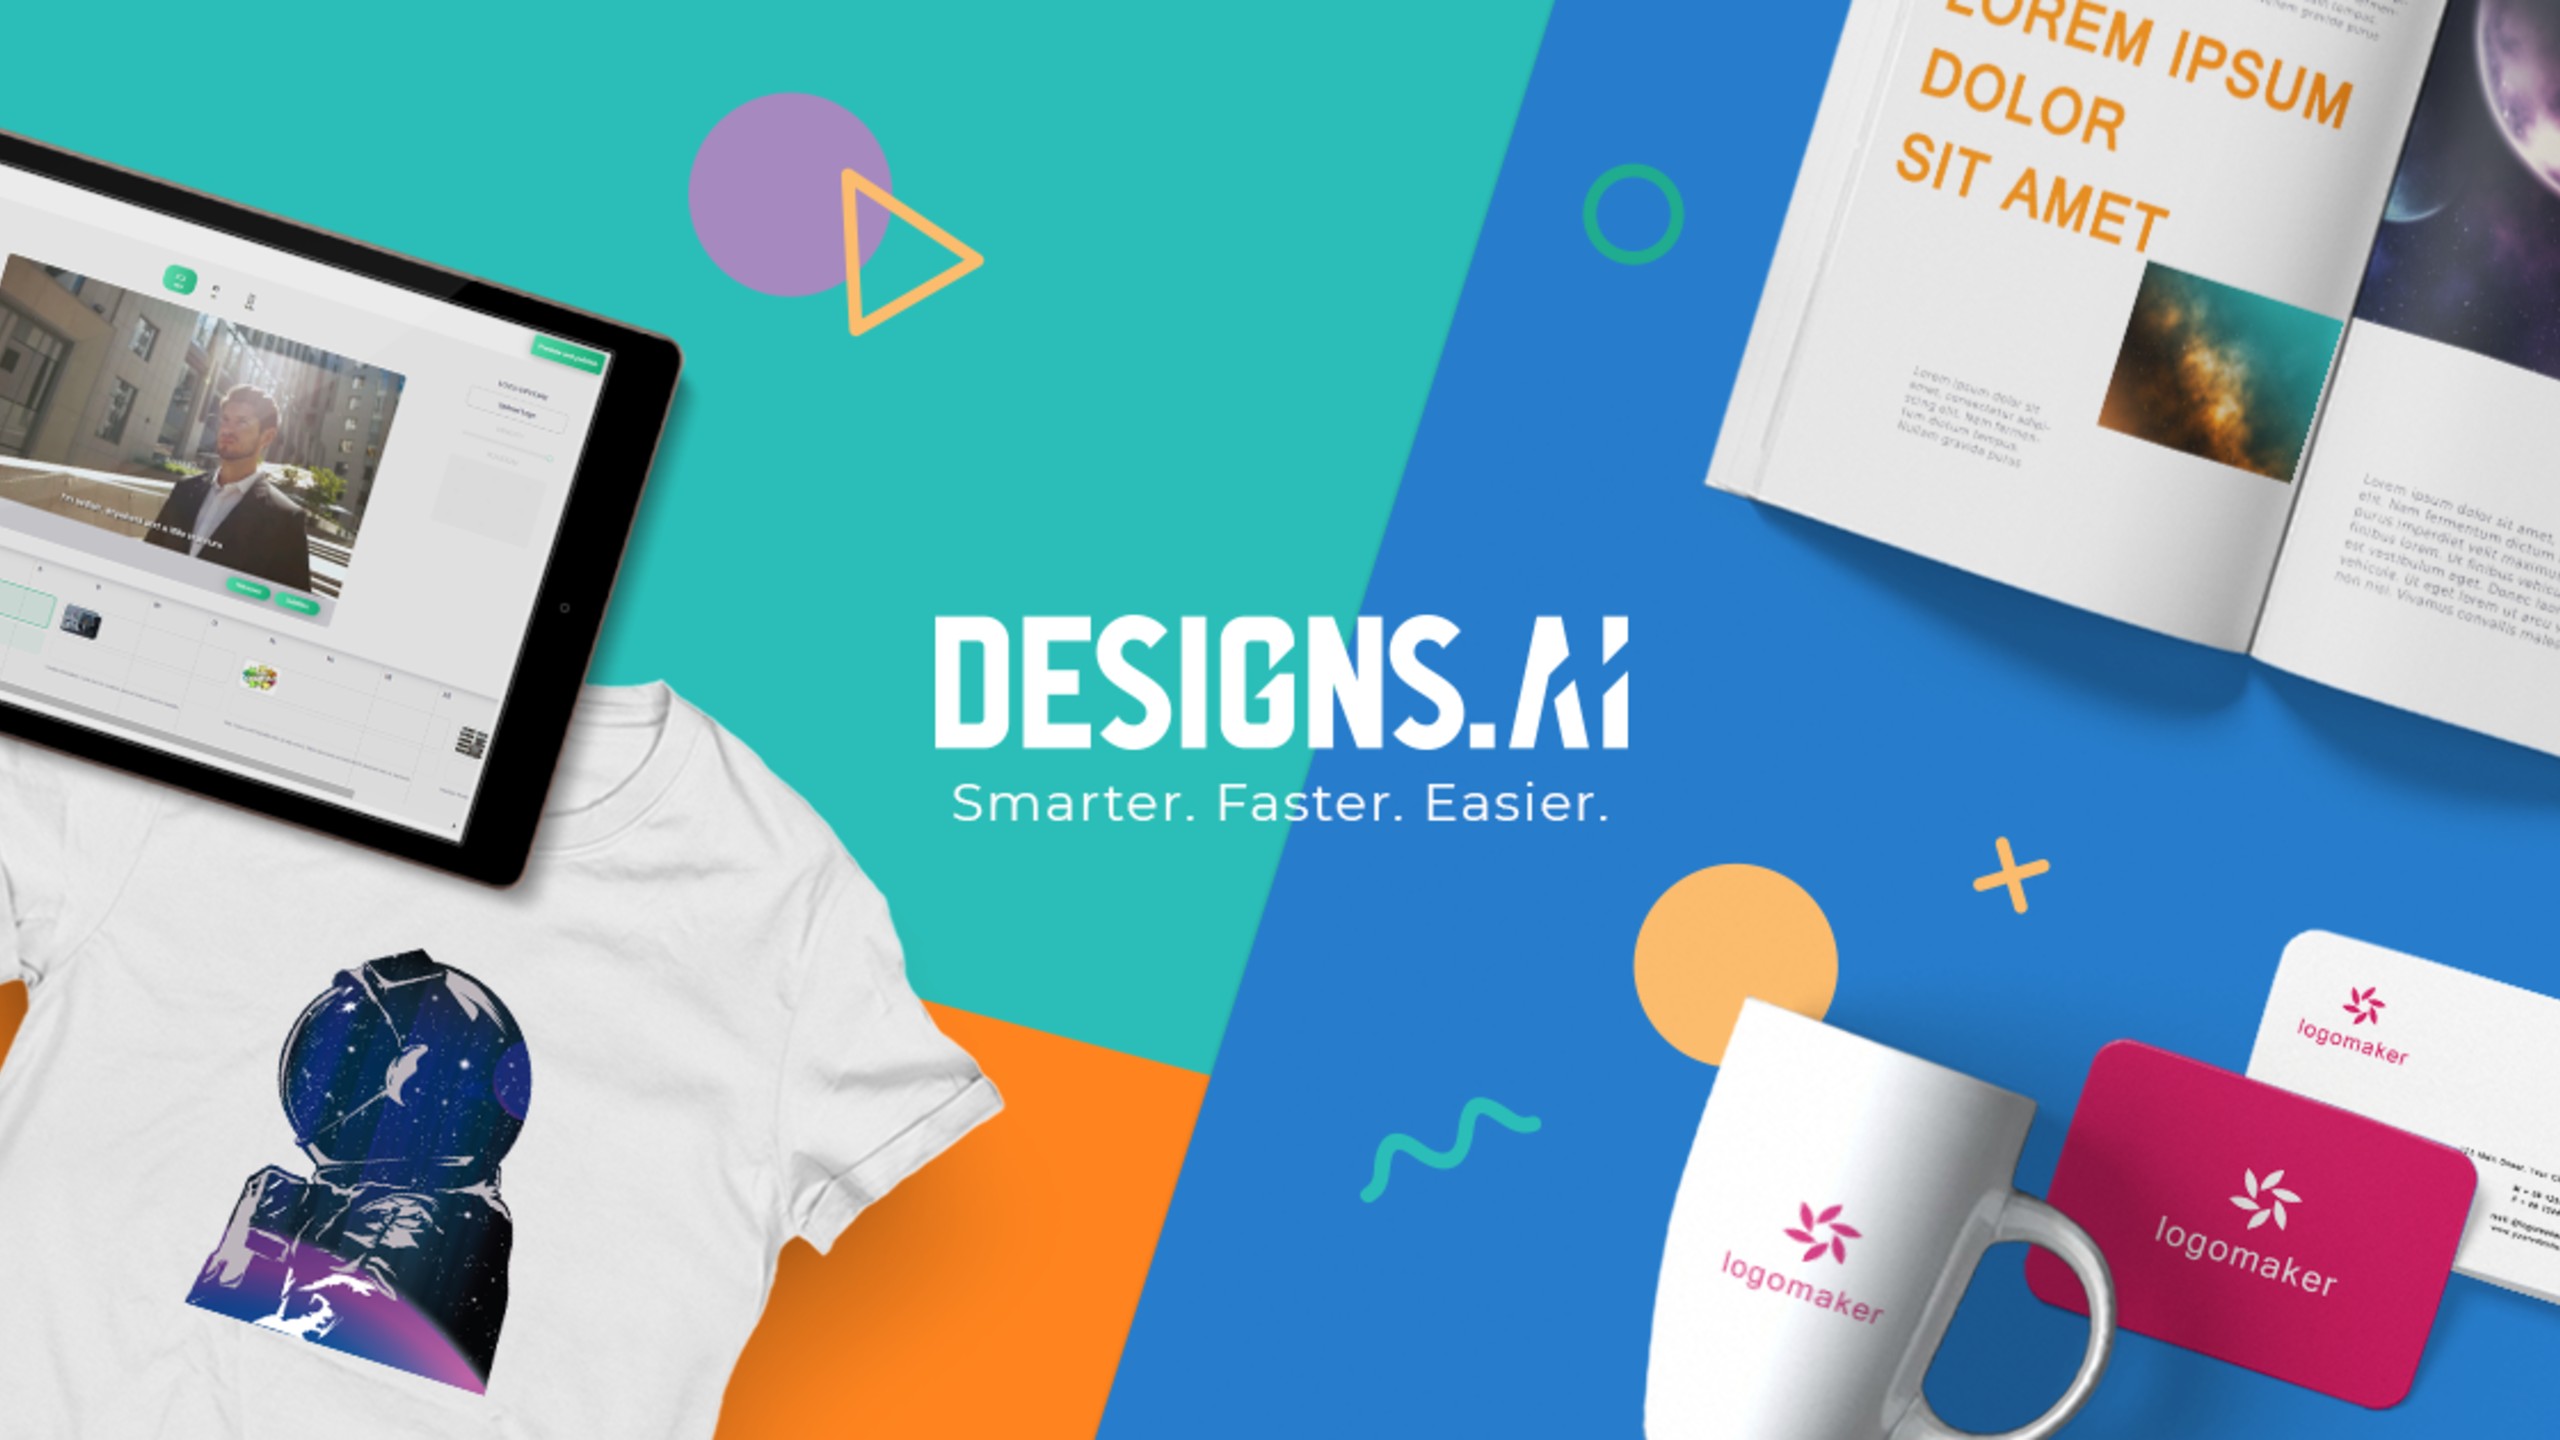 Designs.ai - Создание логотипов, видео, баннеров, макетов с ИИ за 2 минуты